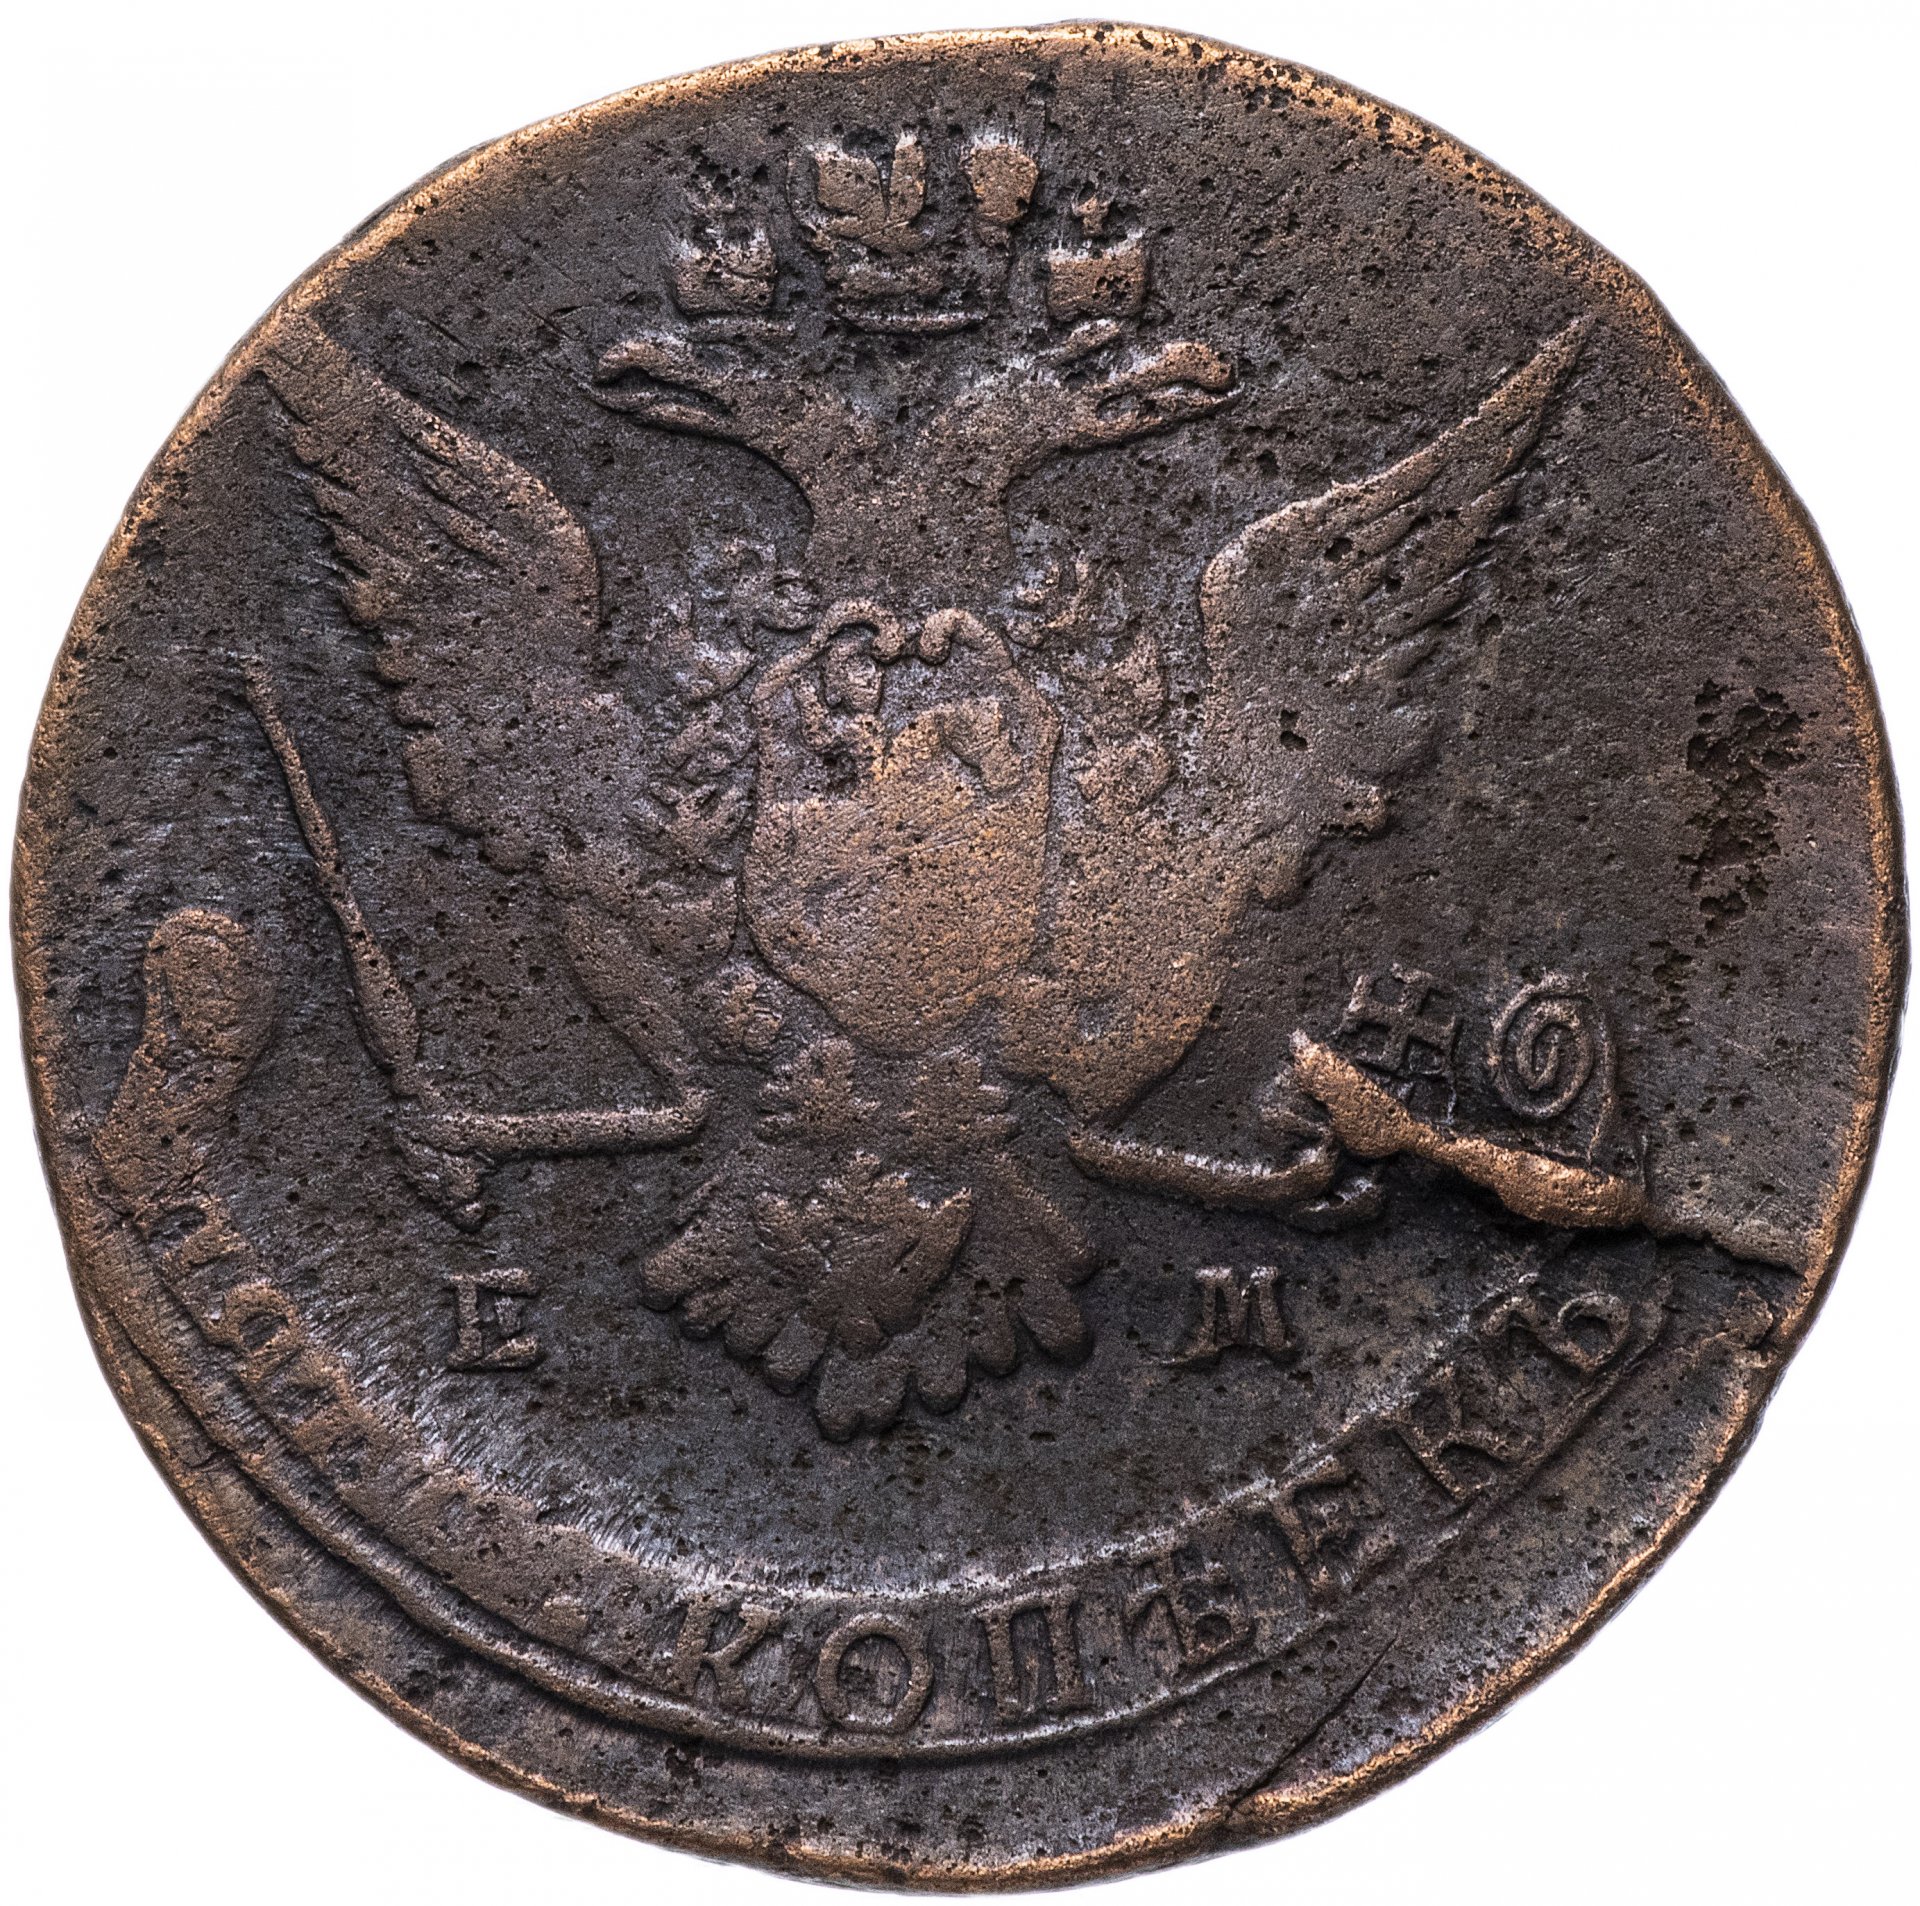 Купить старые монеты. Старинные монеты. Антиквариат монеты. Старая монета с орлом. Старинные монеты с орлом.